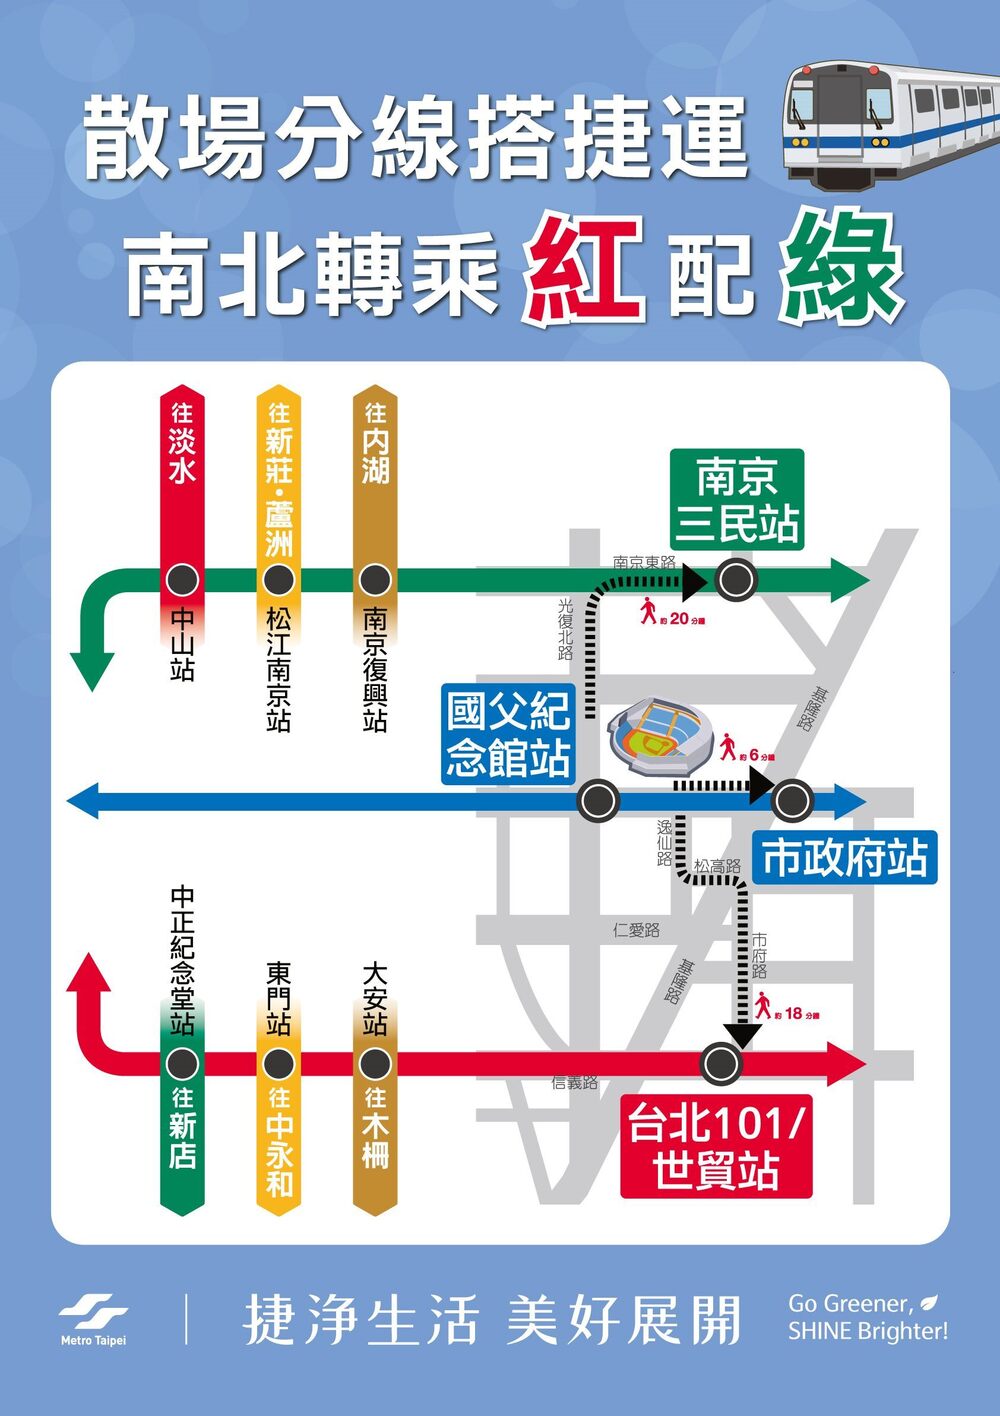 圖／台北捷運提供